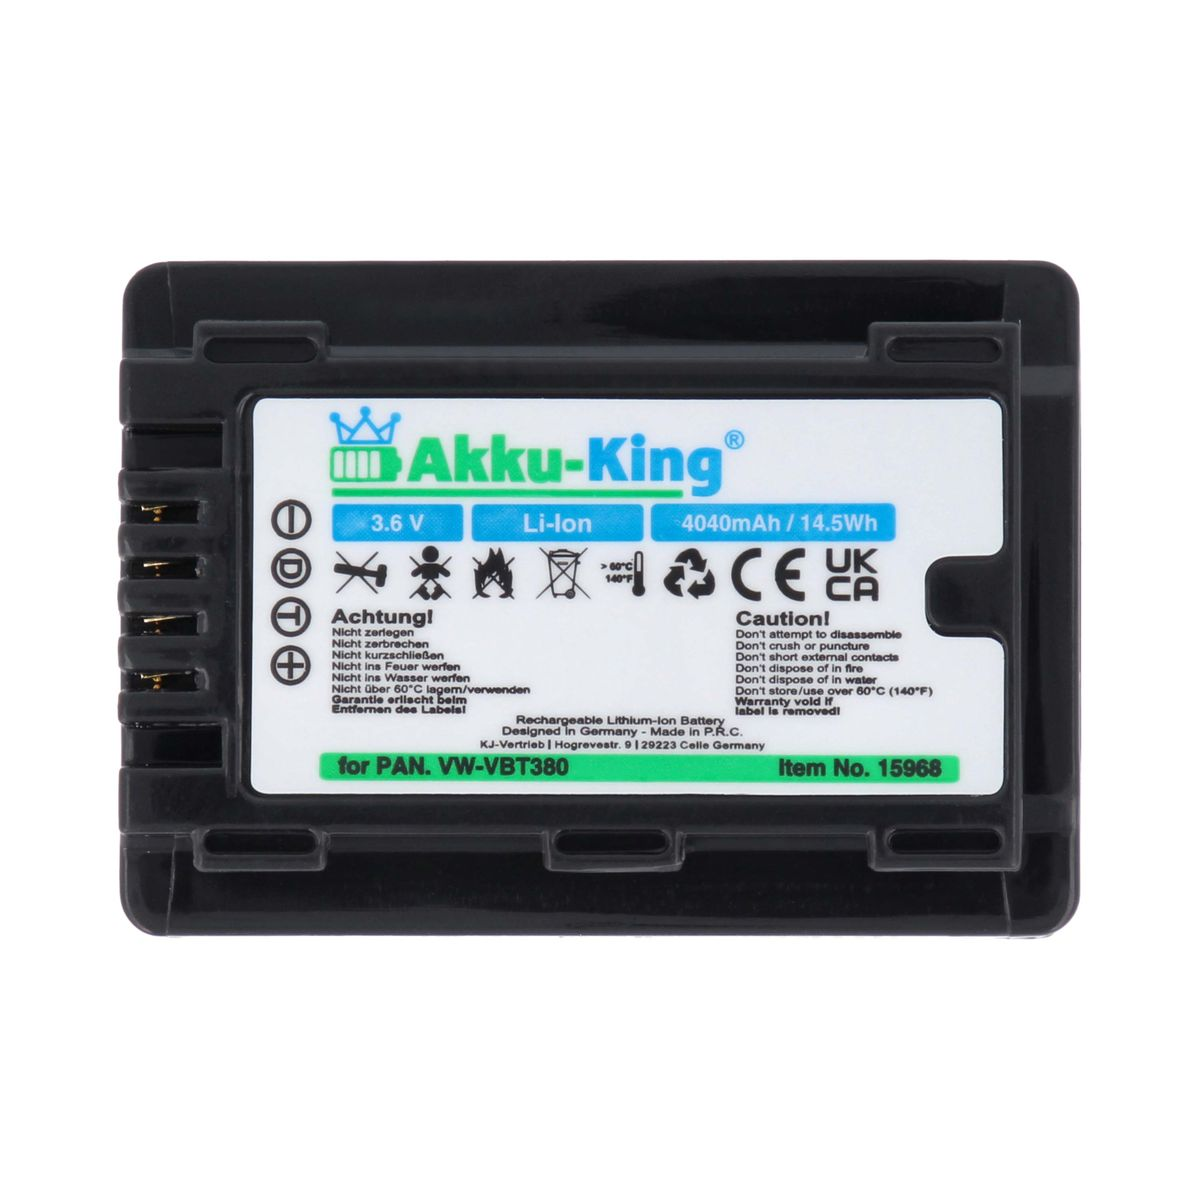 AKKU-KING kompatibel 4040mAh mit Li-Ion Volt, Akku Panasonic VW-VBT380 3.6 Kamera-Akku,